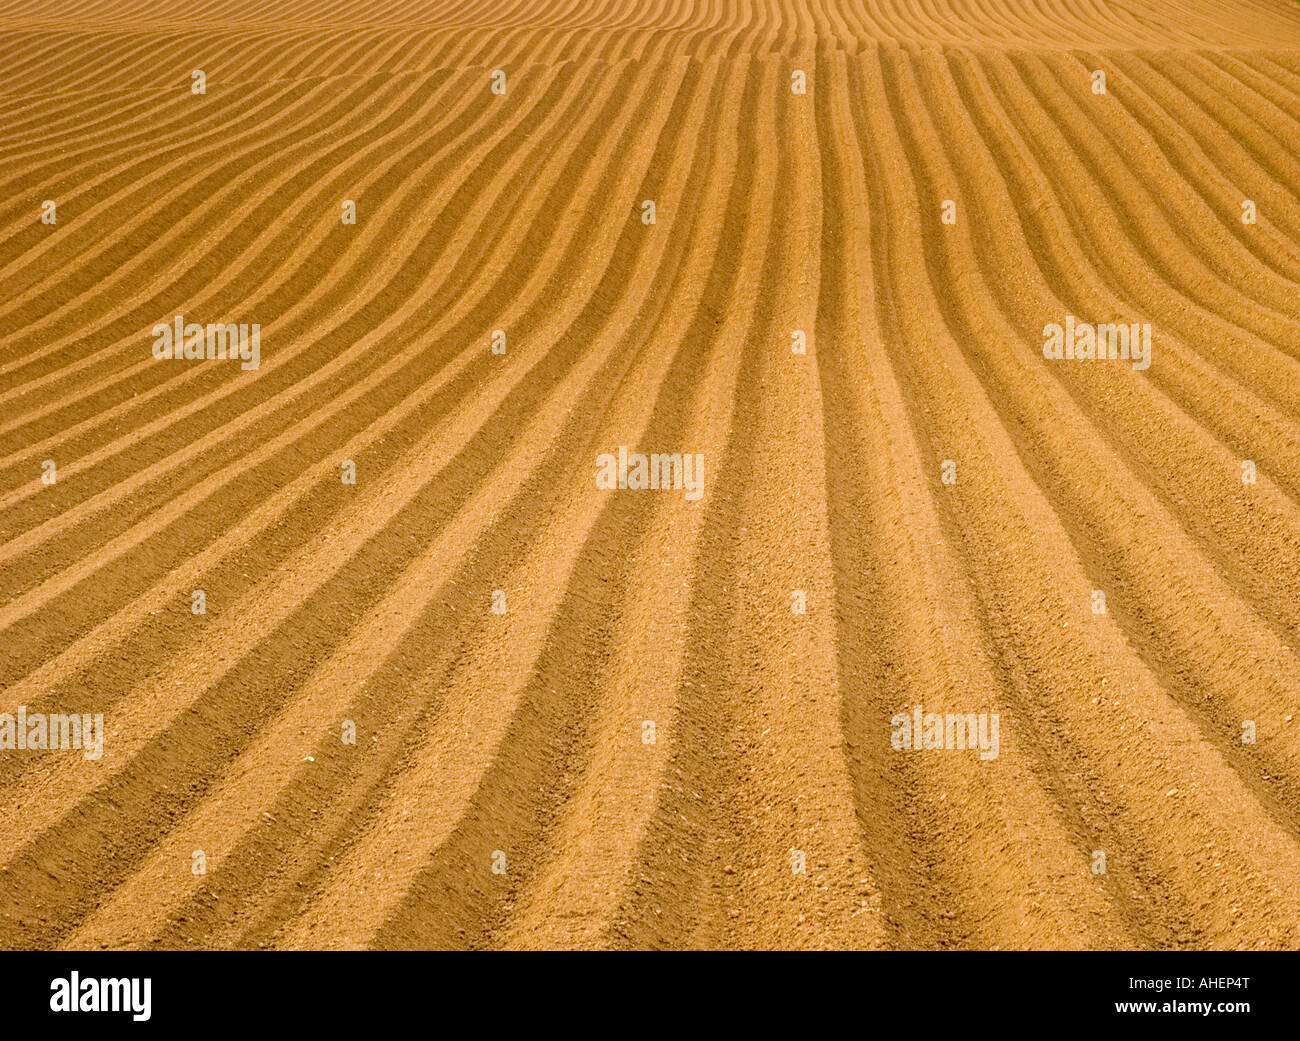 Le linee convergenti del solco in una fresca campo arato Foto Stock